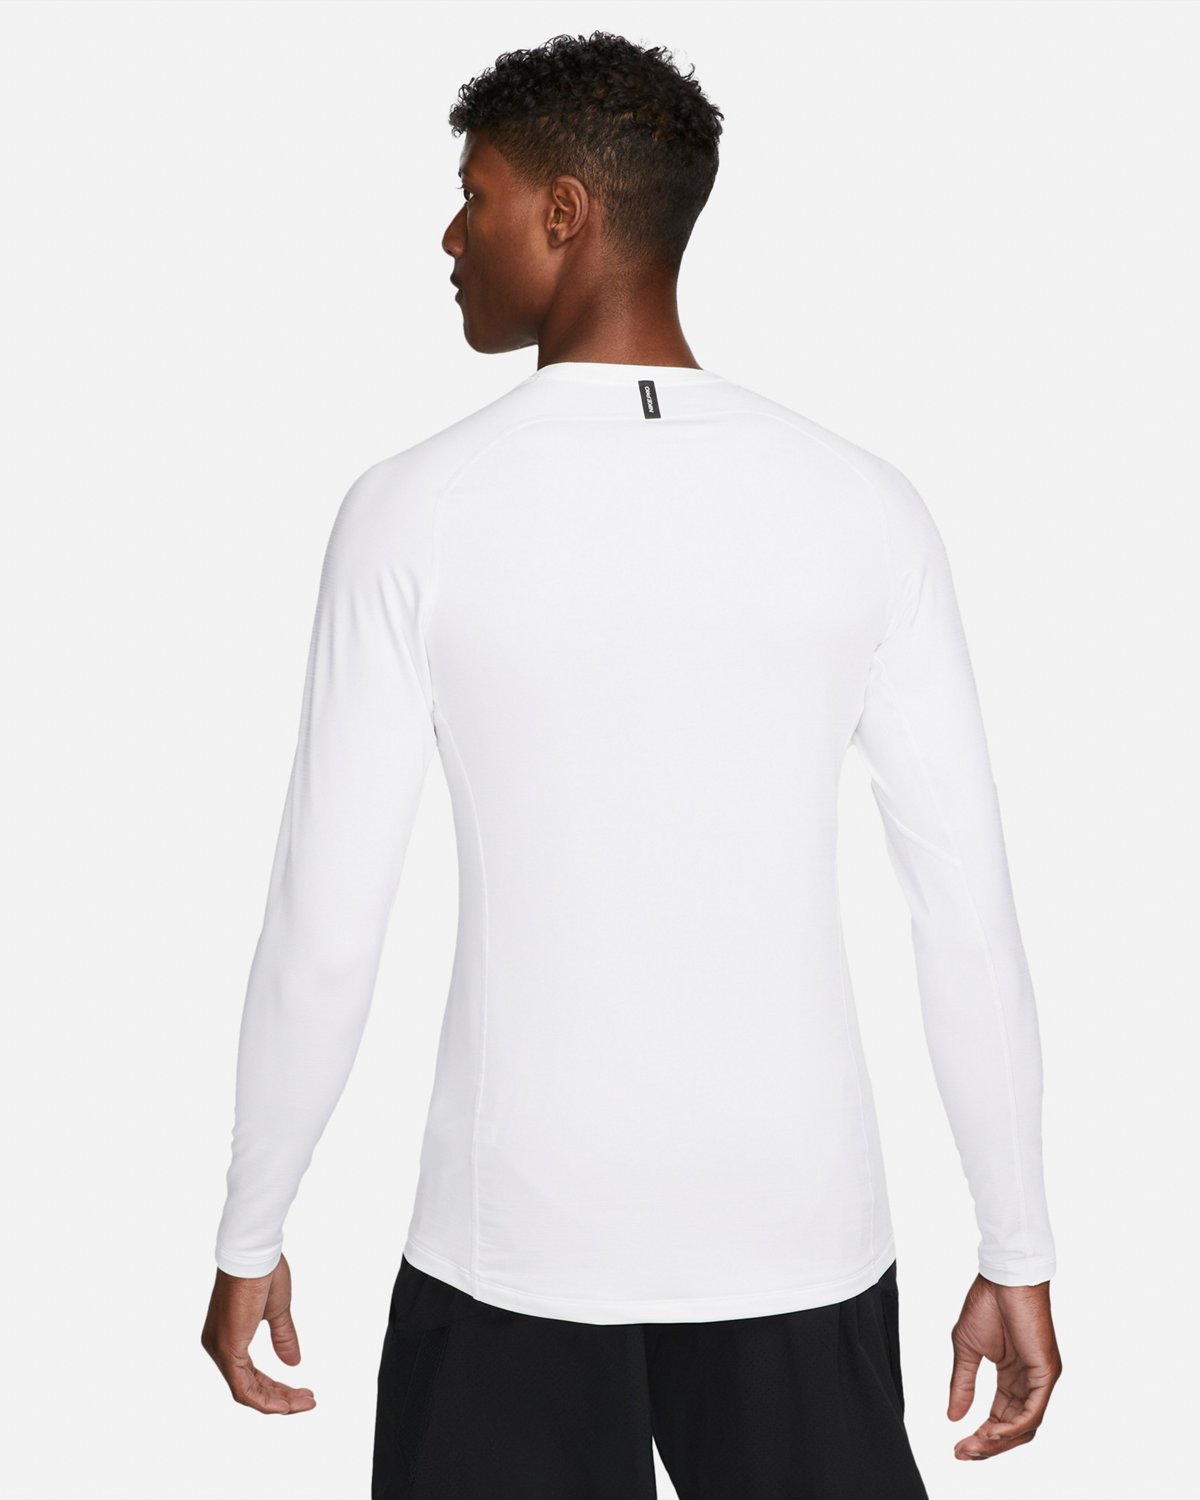 conservador recompensa abdomen Nike Men's Pro Warm Long Sleeve T-shirt | Academy